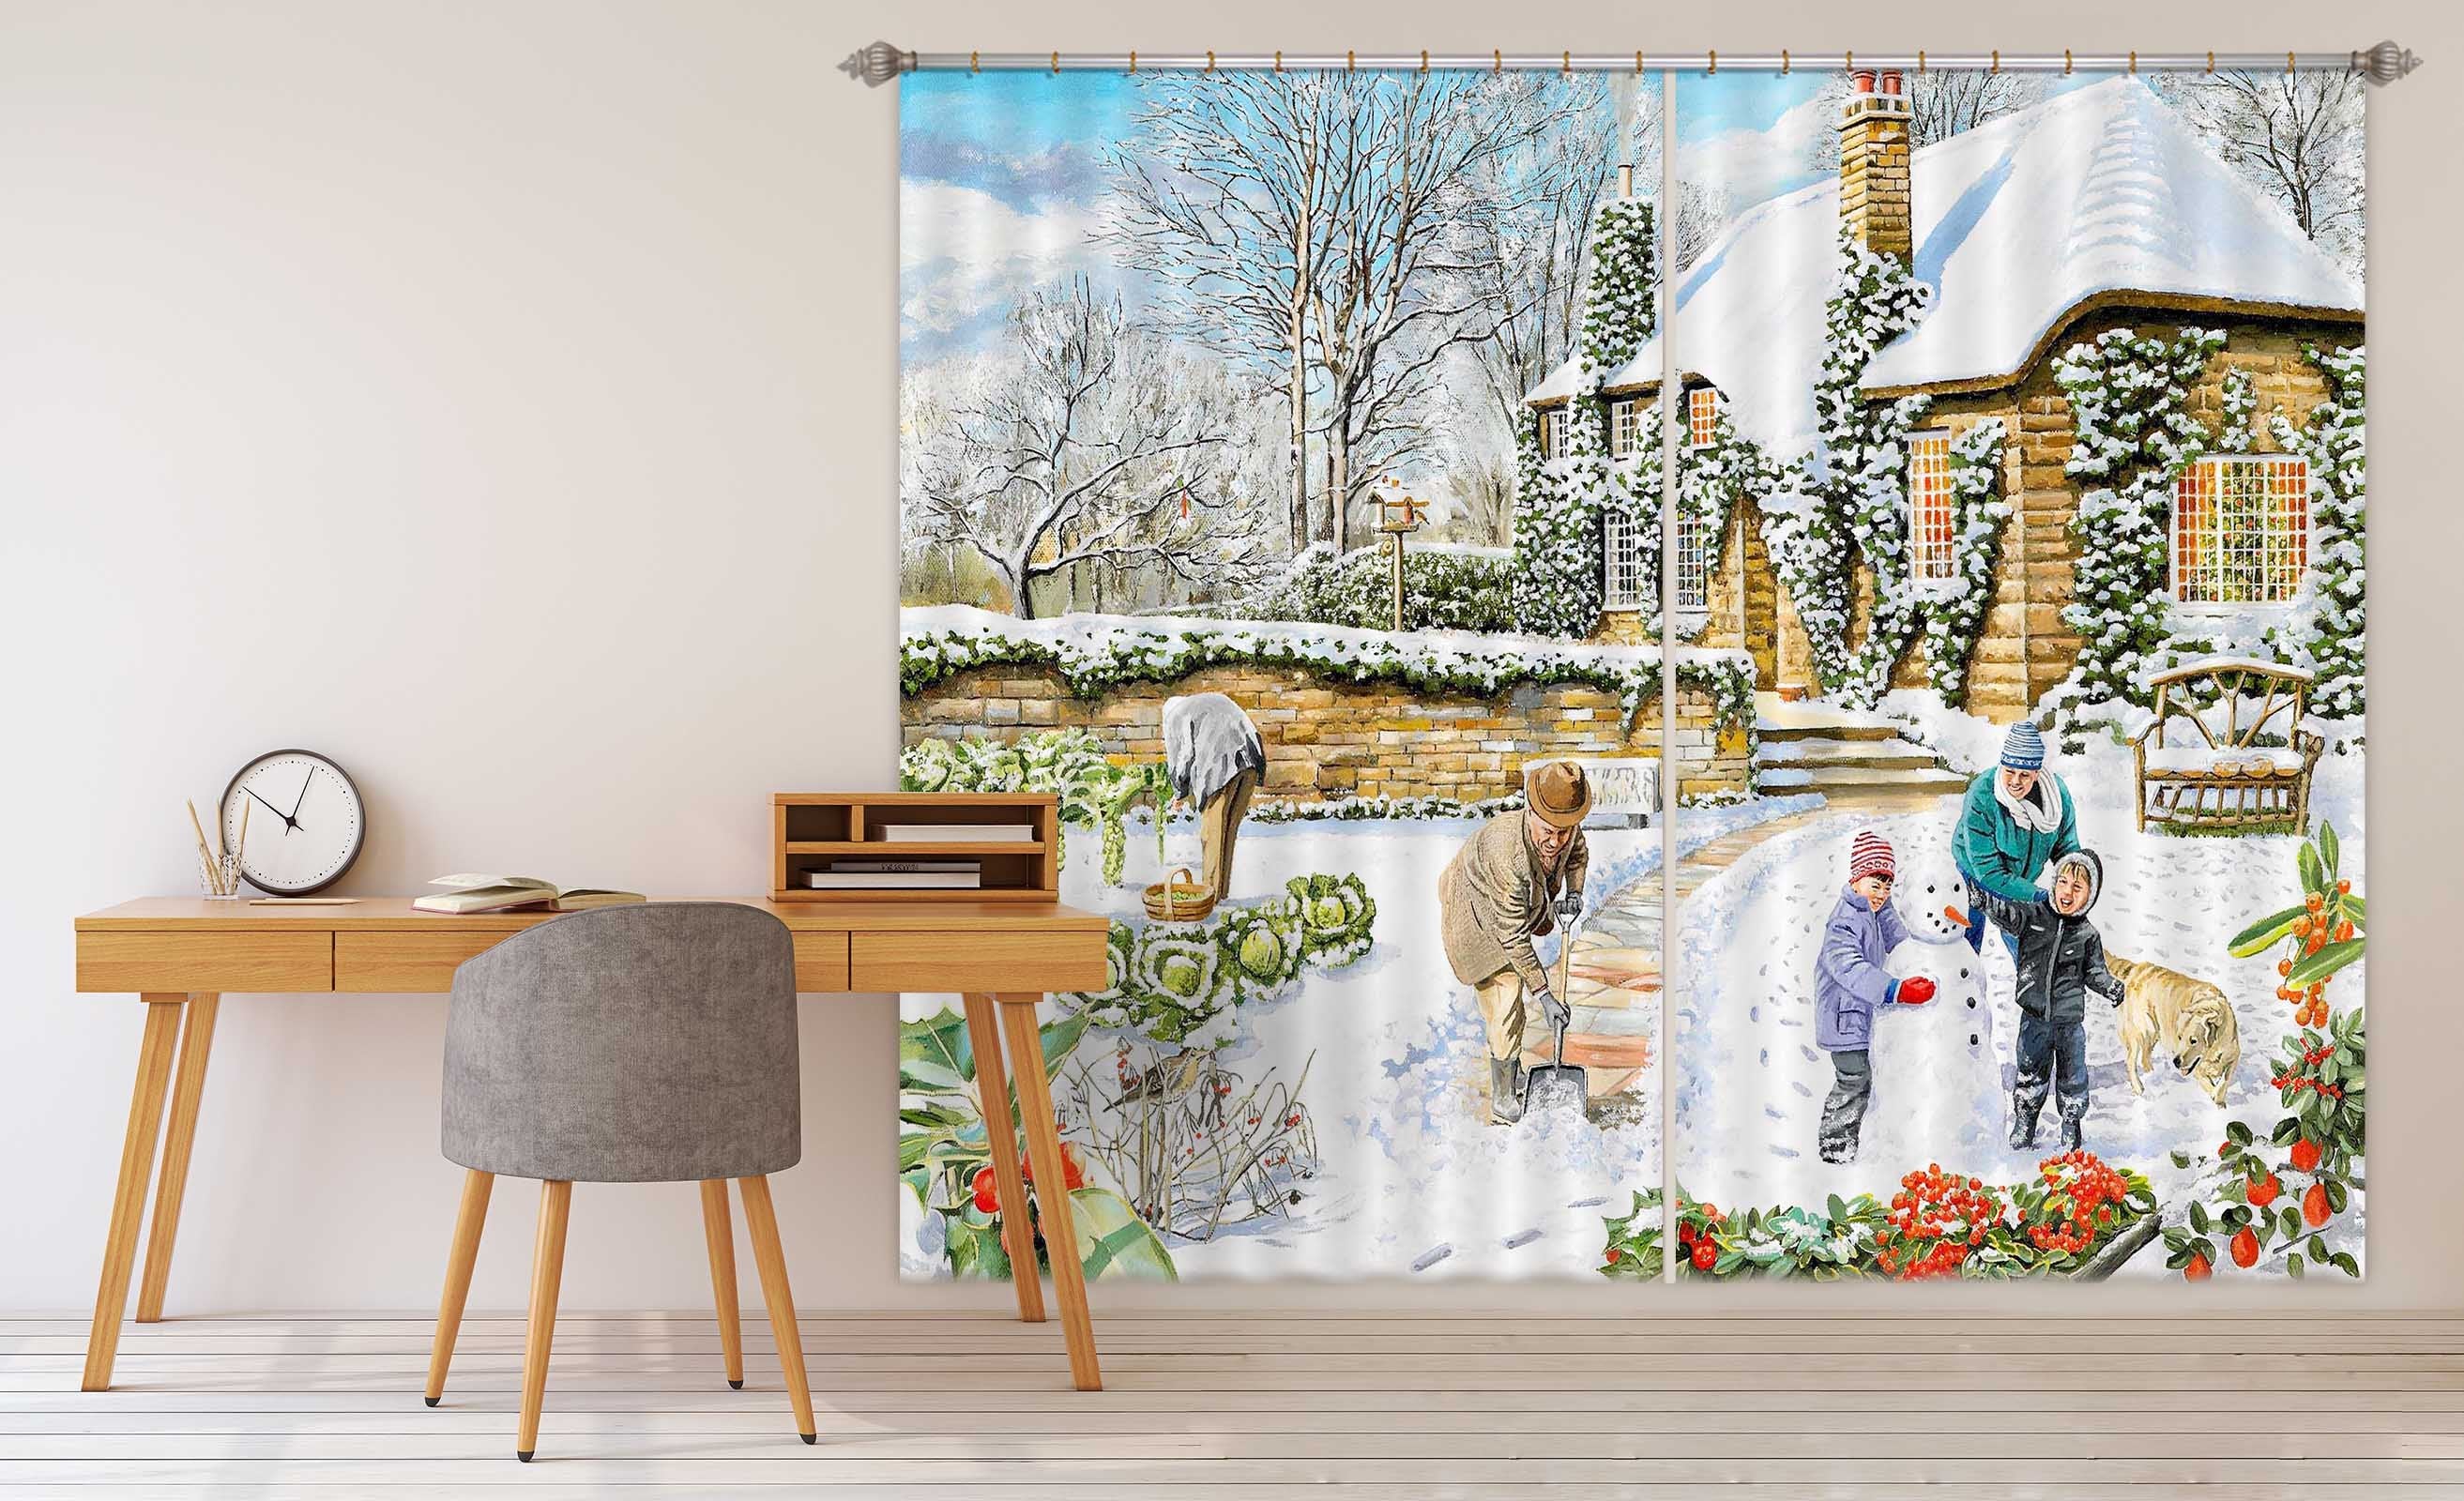 3D A Winter Garden 043 Trevor Mitchell Curtain Curtains Drapes Wallpaper AJ Wallpaper 